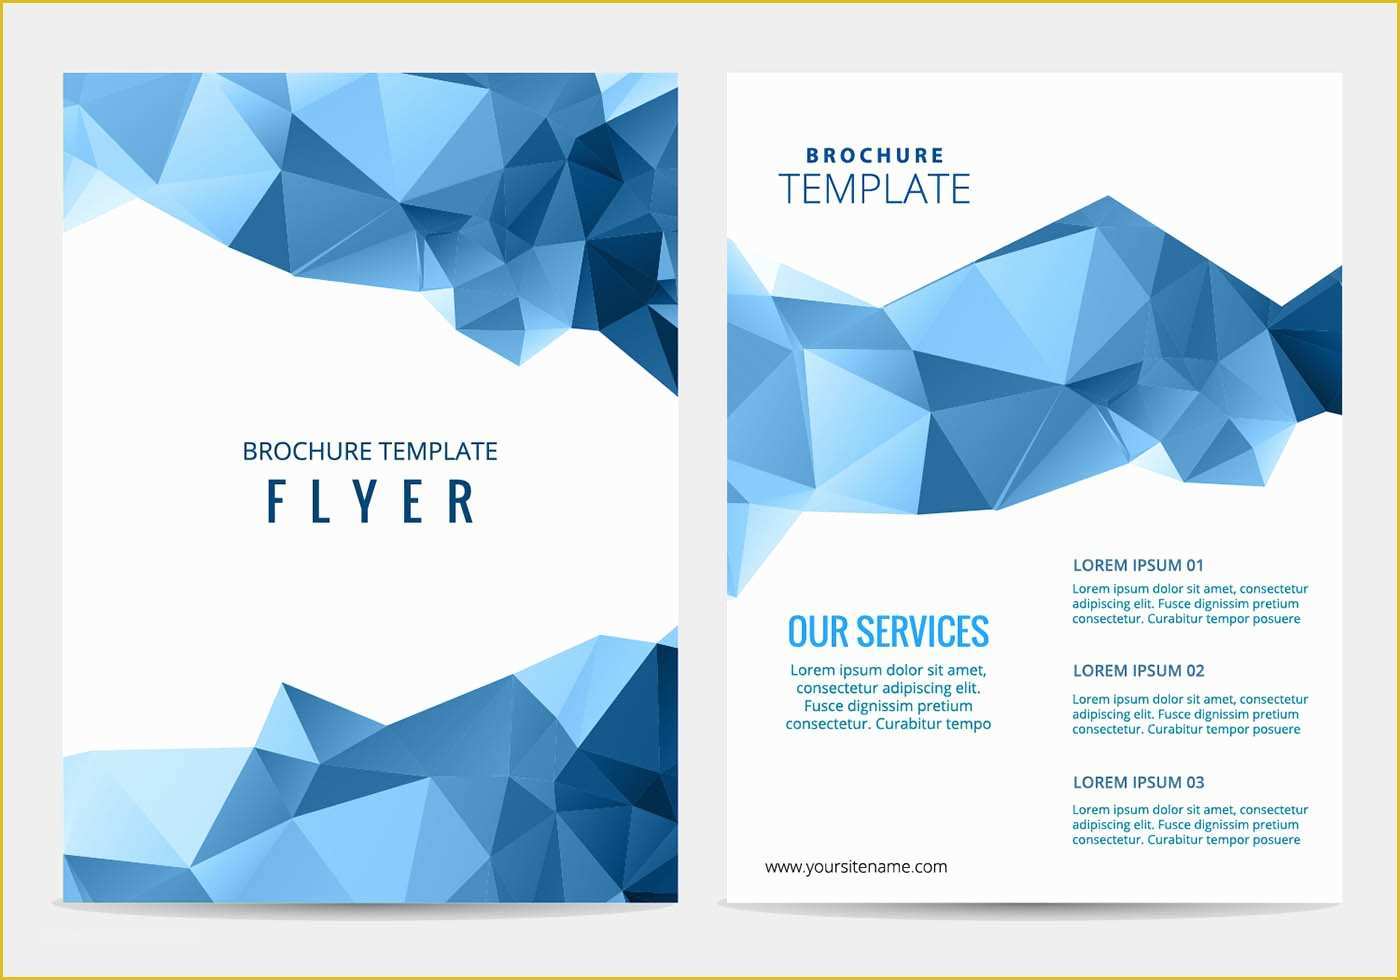 Free Flyer Brochure Templates Of Vector Business Brochure Download Free Vector Art Stock